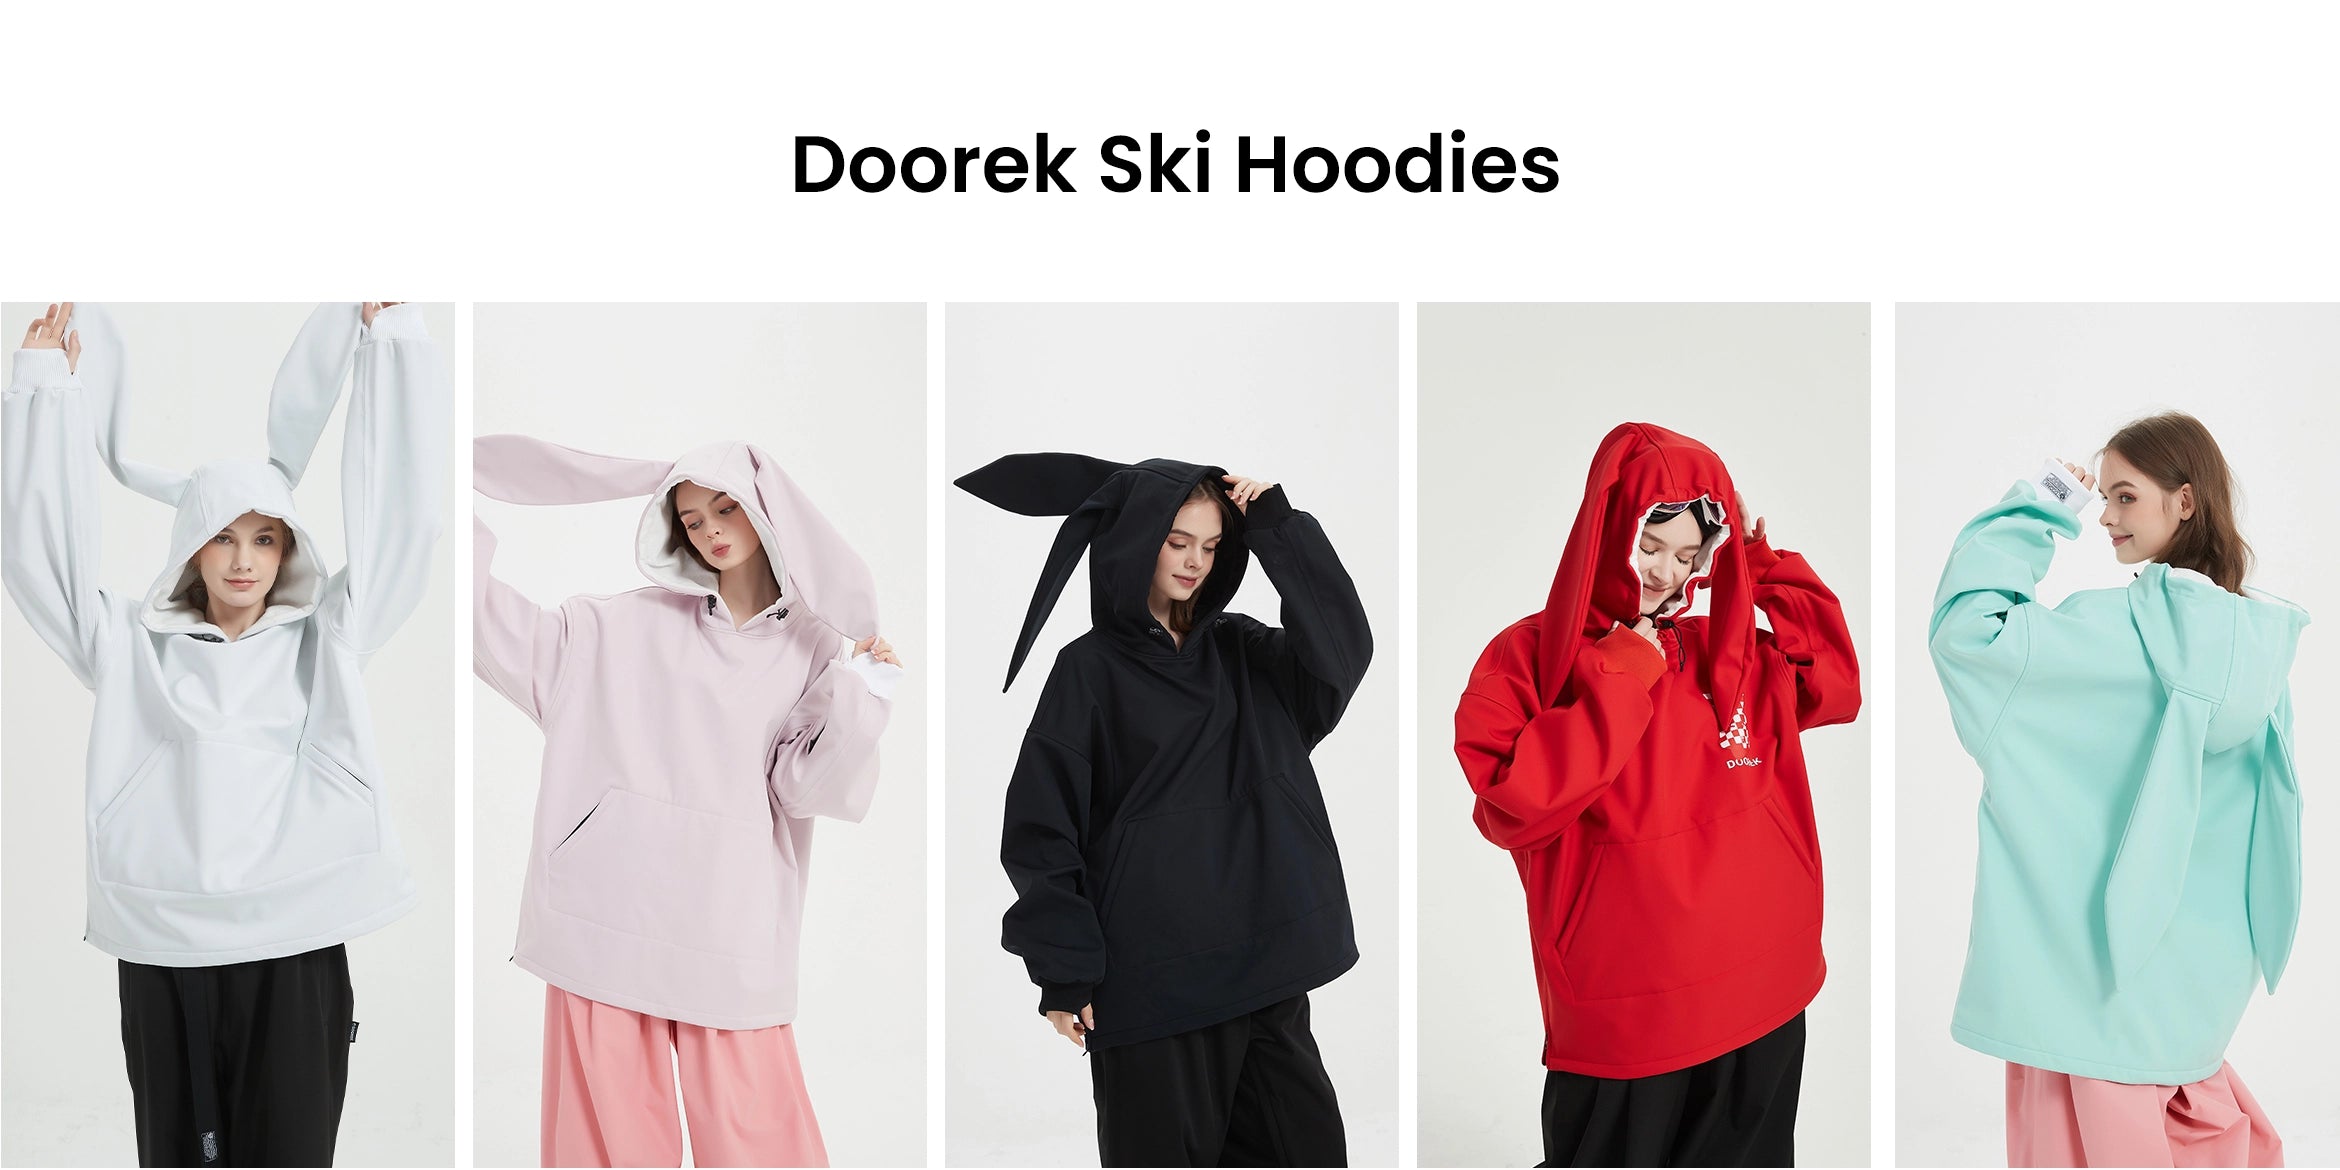 2. Doorek ski hoodies colorful